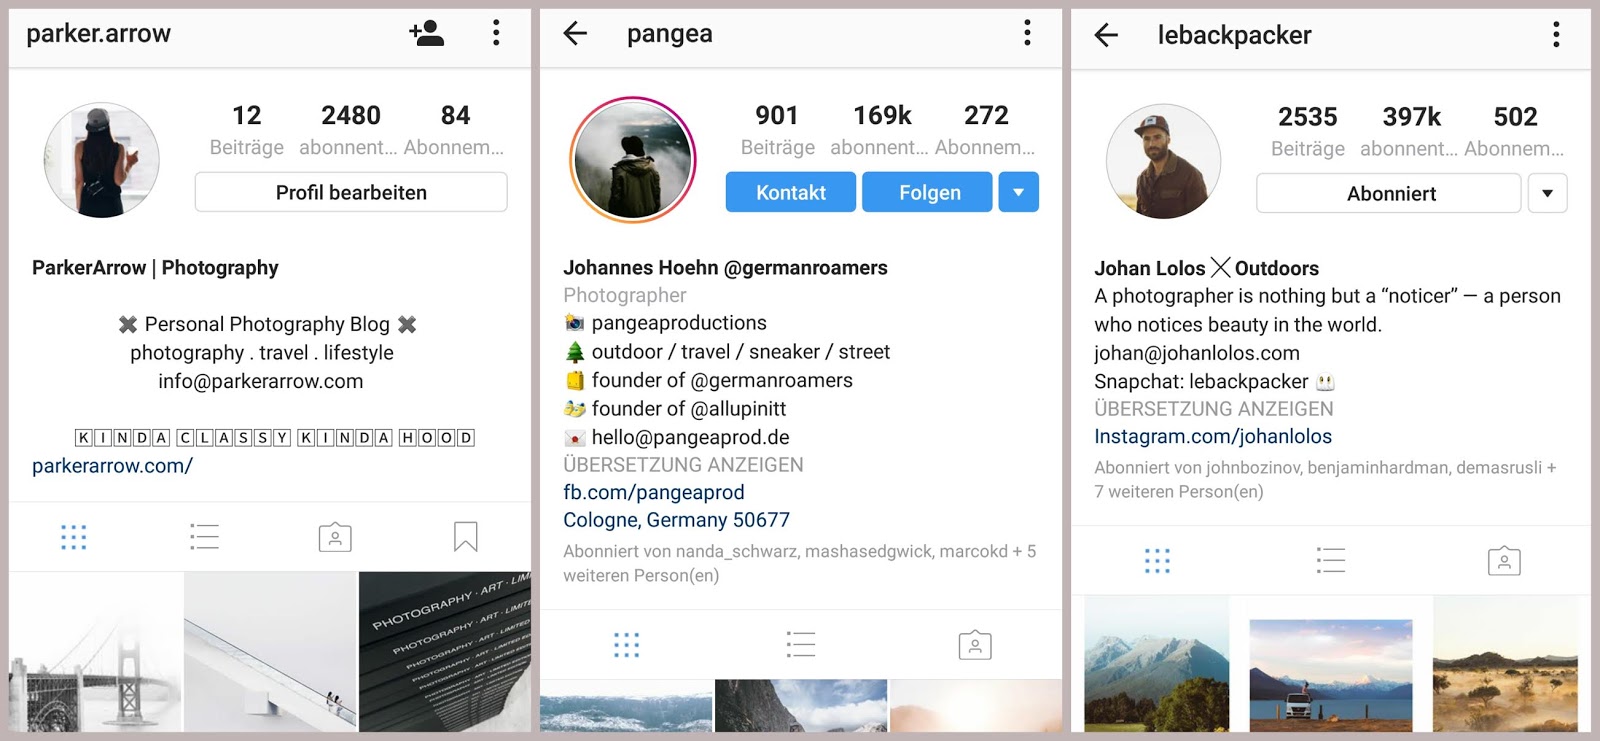 beginn!   er killer tutorial how to gain free instagram followers - free instagram followers for photographers